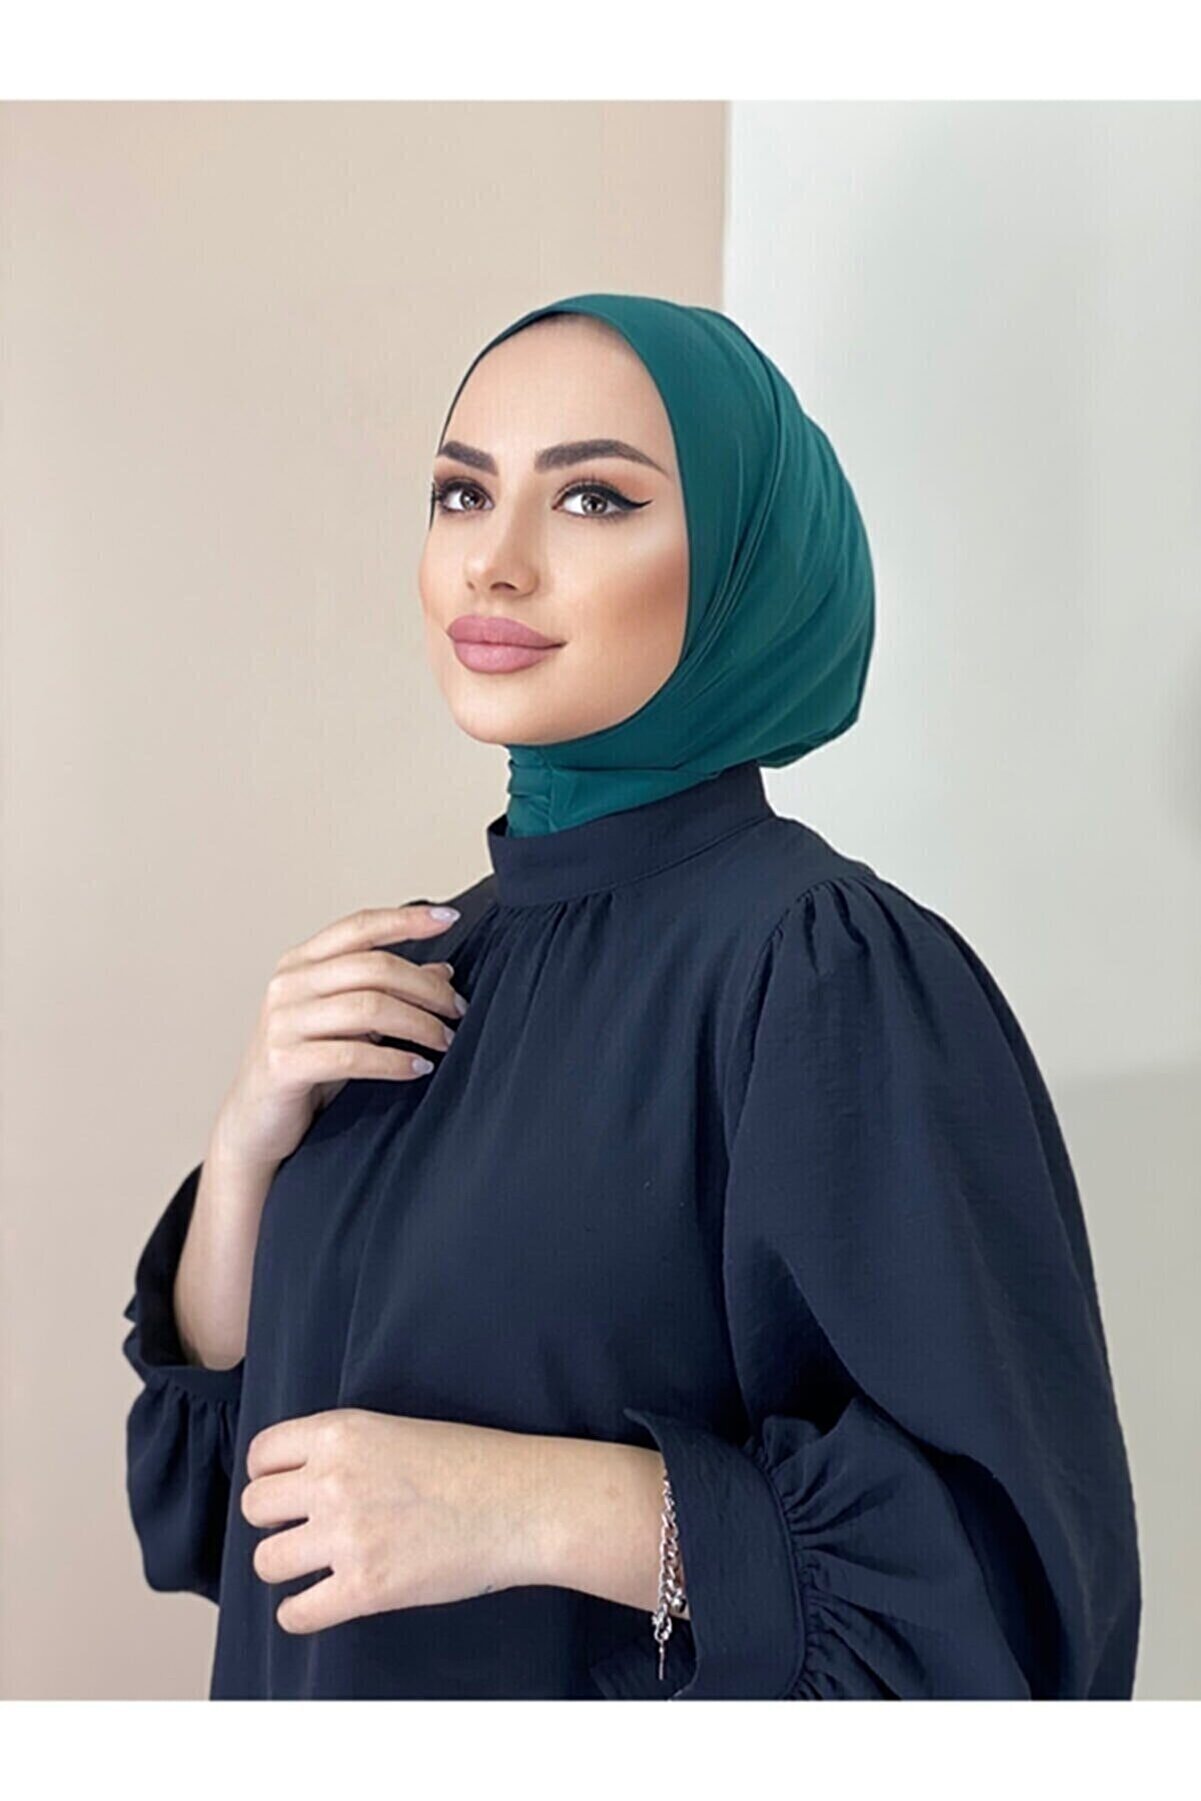 Naciye Sultan Kadın Tesettür Çıtçıtlı Boyunluk Hijap Bone Modeli Eşarp Şal